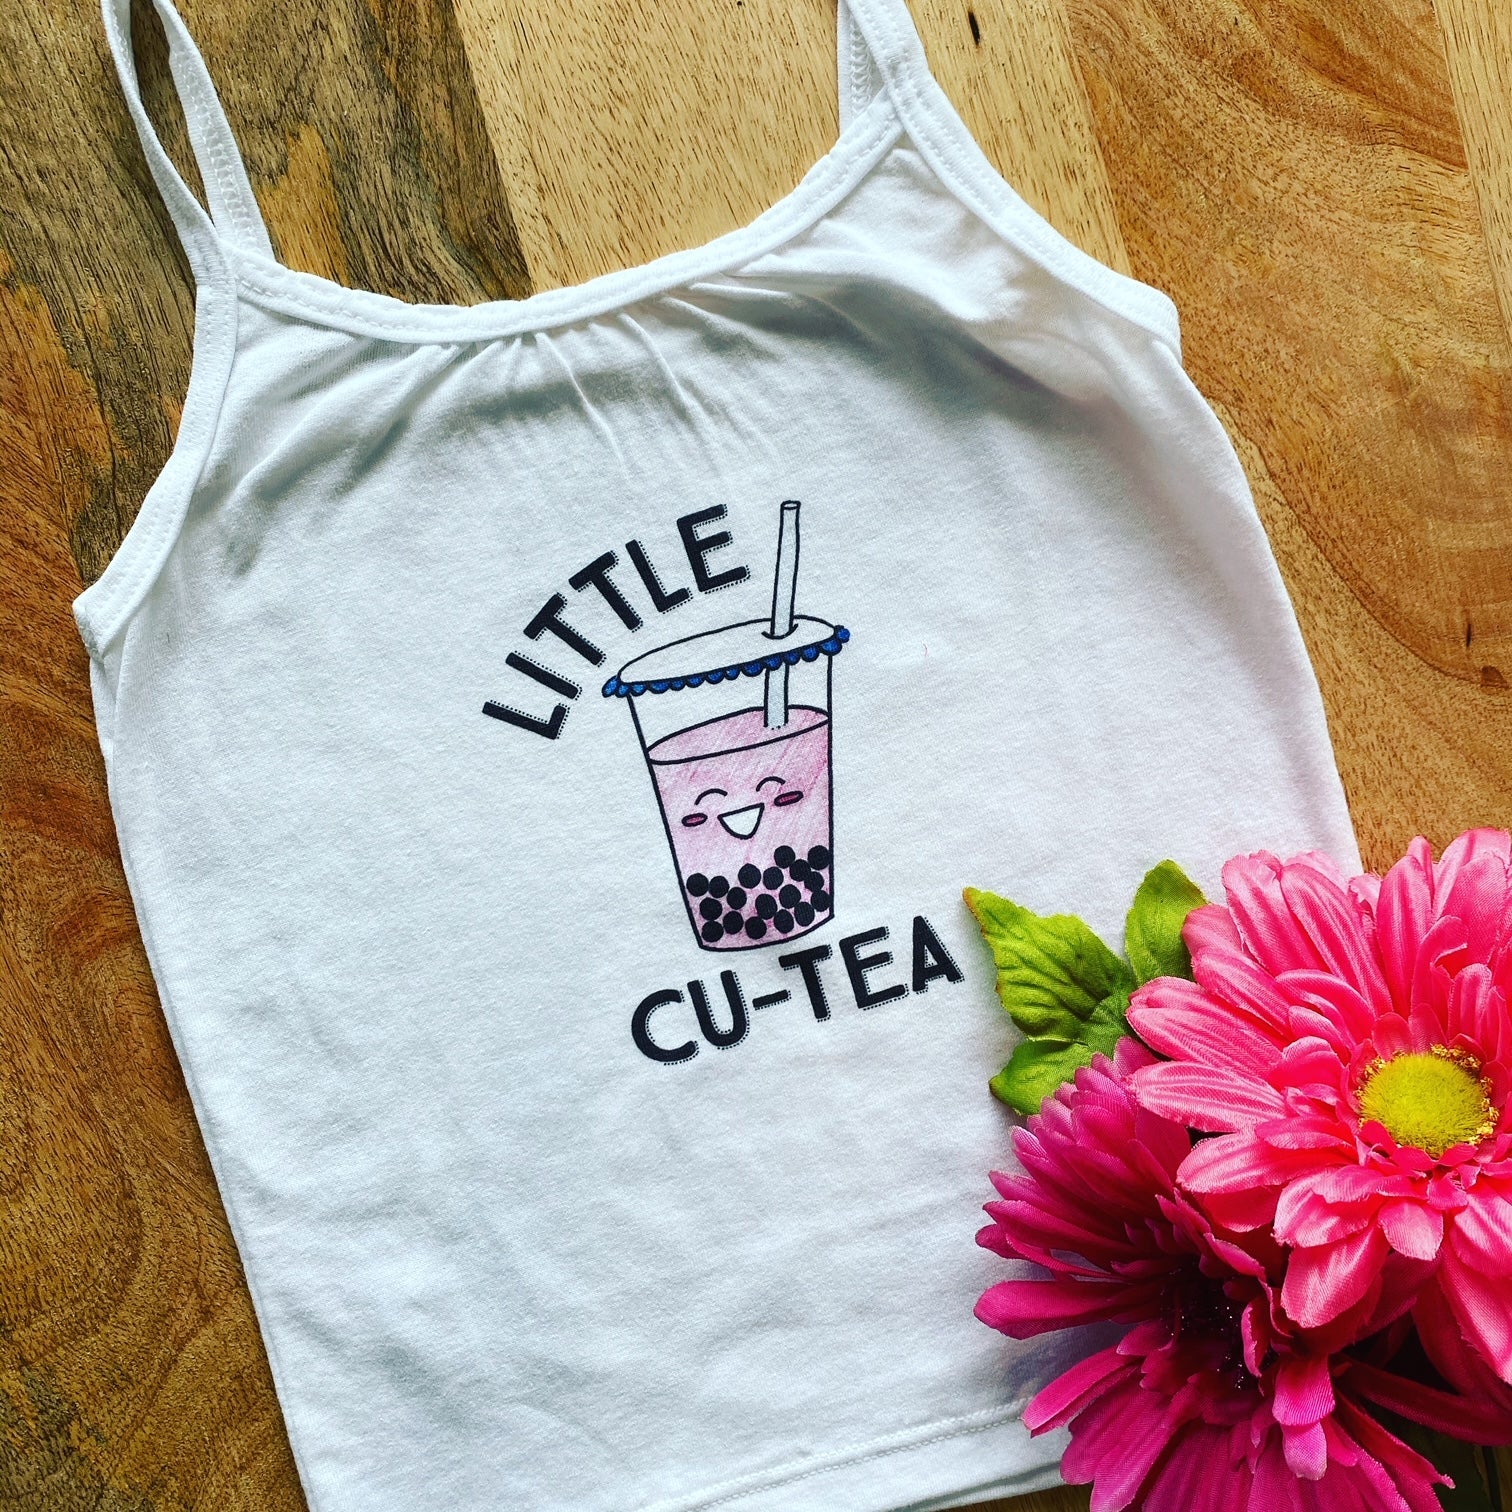 Pop-Up Mākeke - Sal Terrae - Little Cu-Tea Short Sleeve Toddler T-Shirt